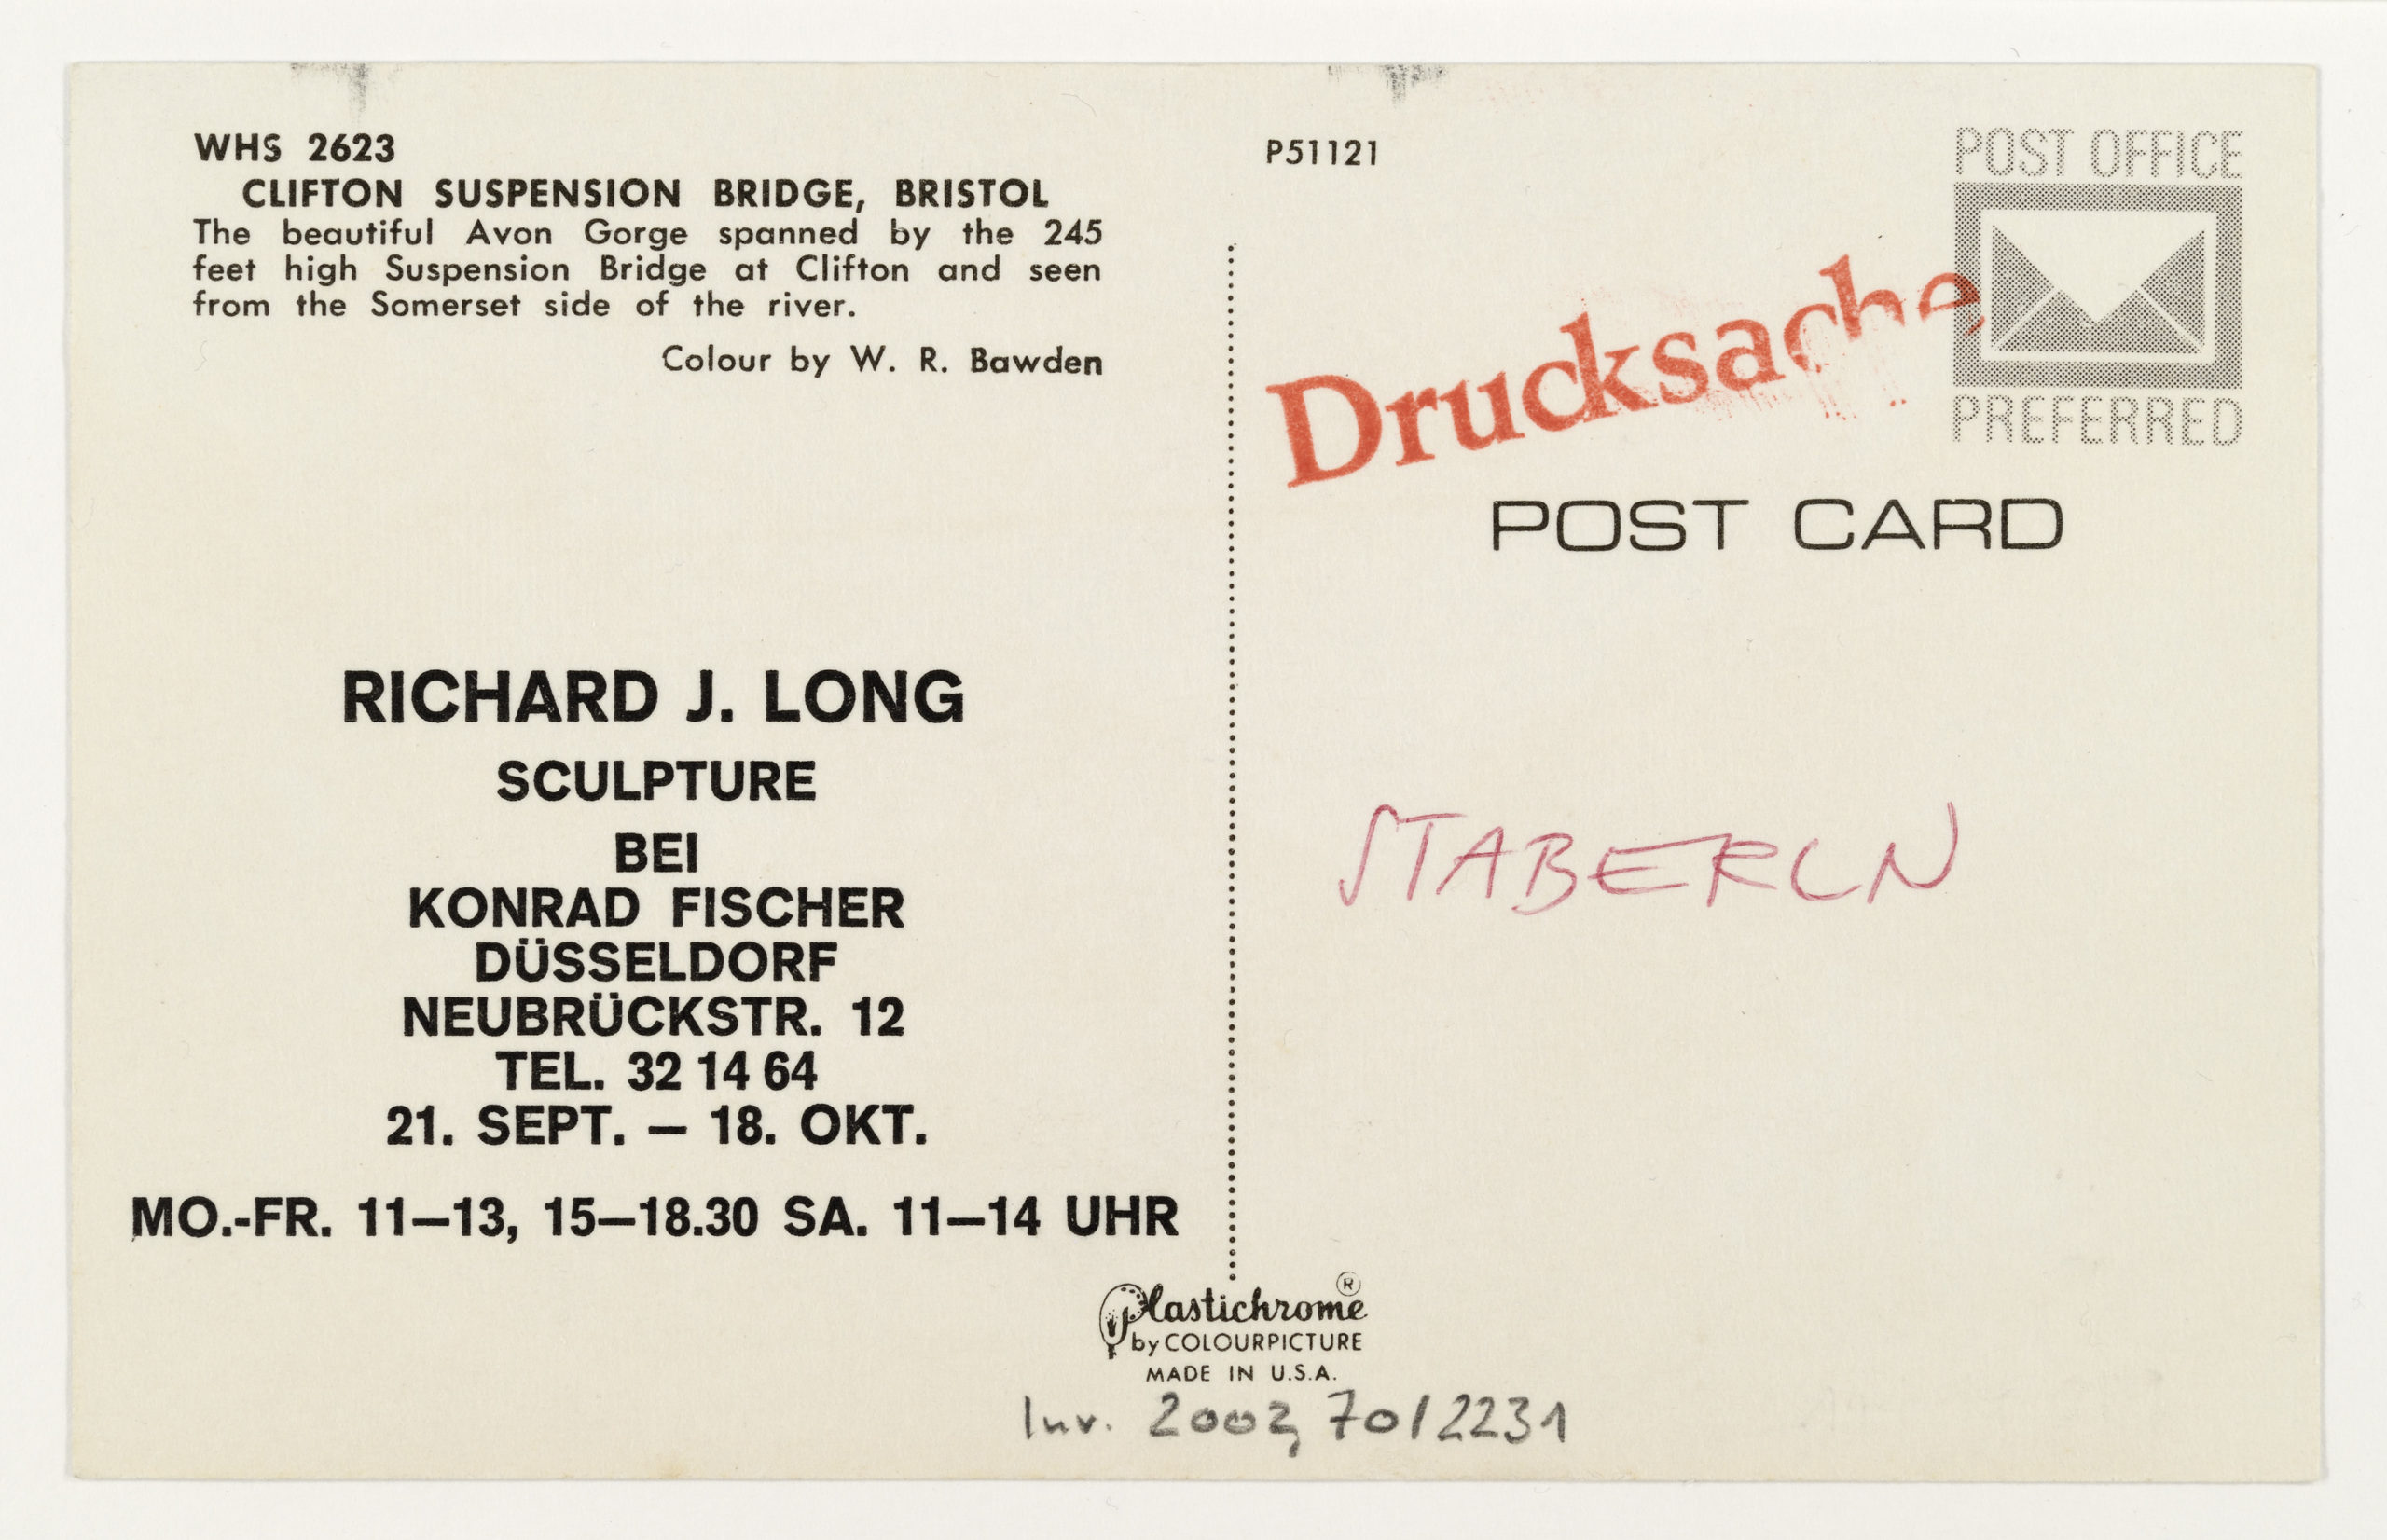 Richard Long "Sculpture", Galerie Konrad Fischer, Düsseldorf, 1968 (Invitation); Sammlung Marzona, Kunstbibliothek – Staatliche Museen zu Berlin; VG Bild-Kunst, Bonn.